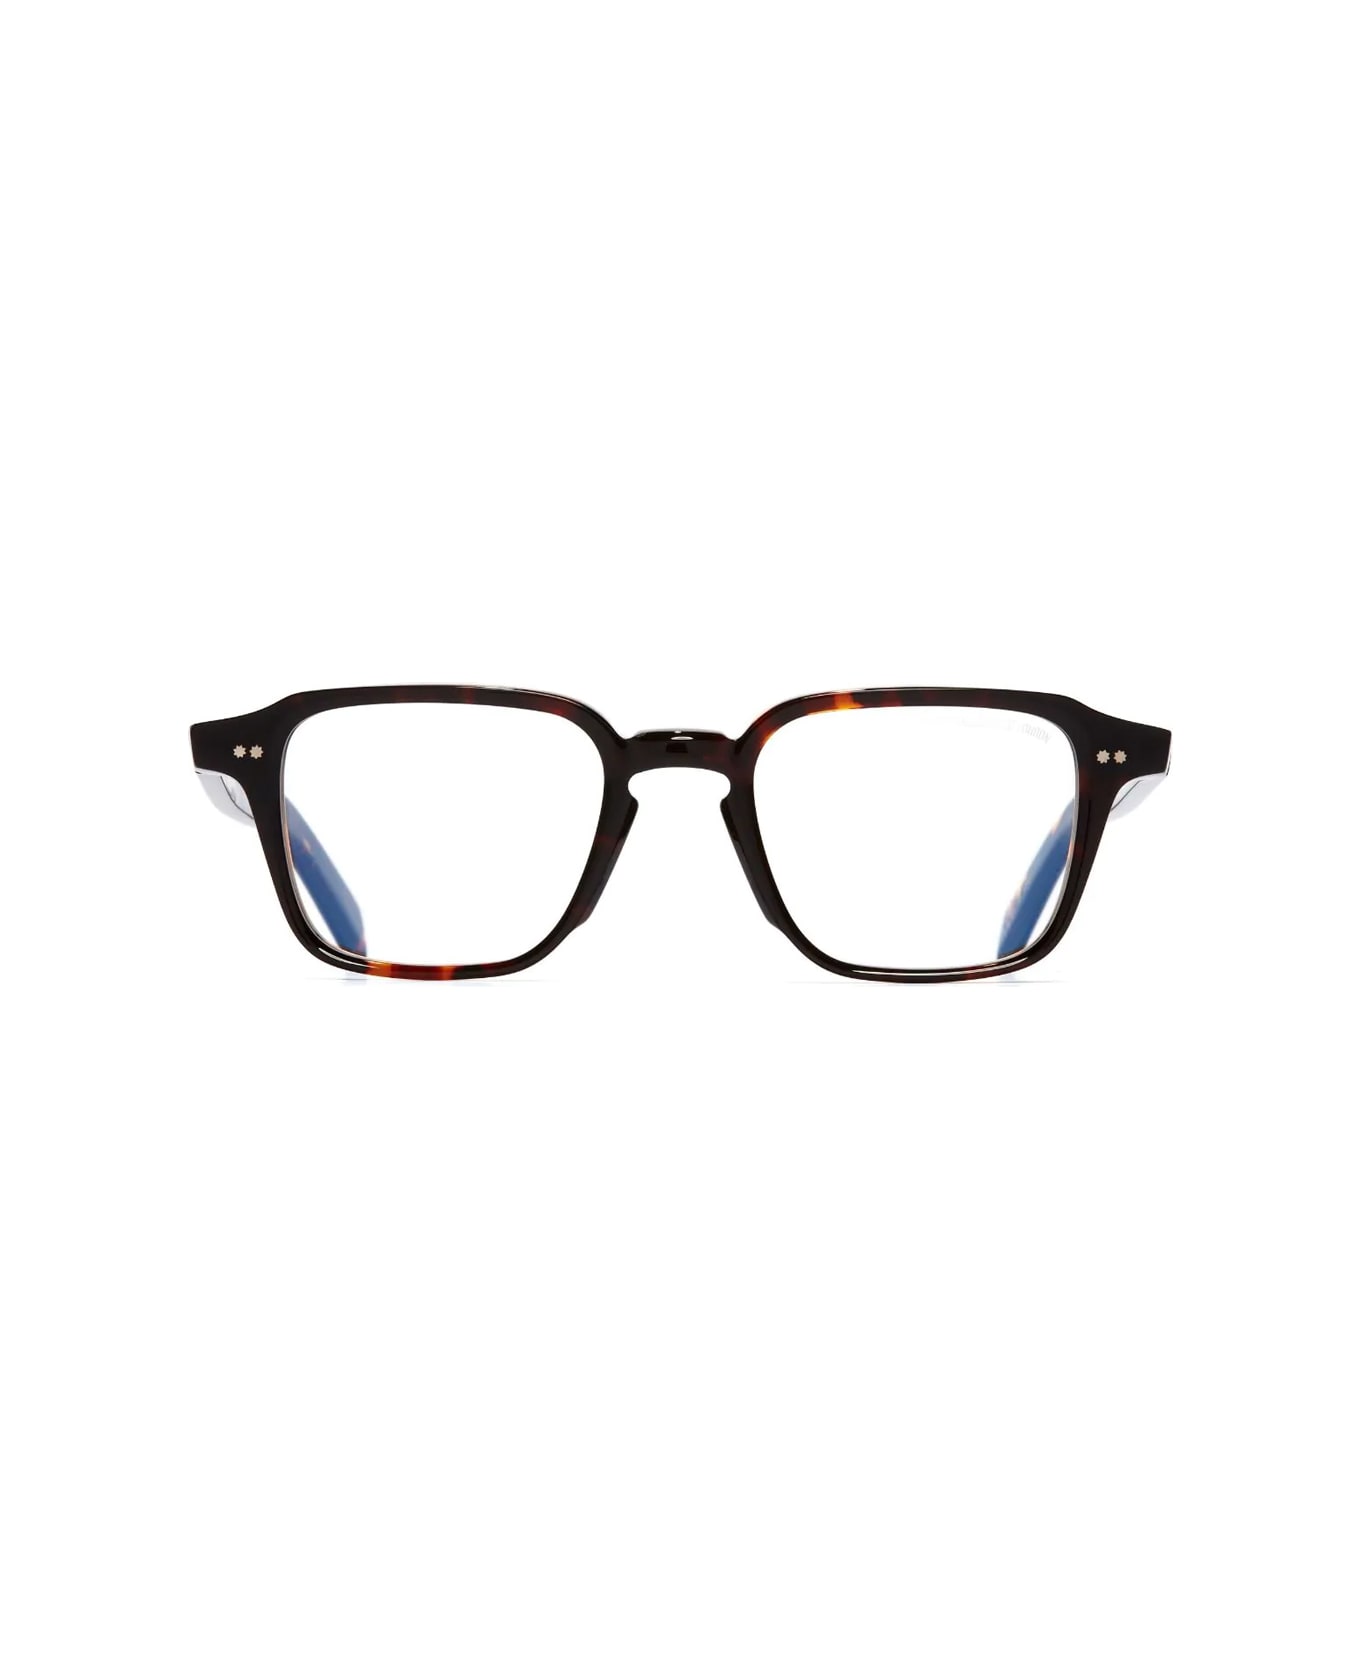 Cutler and Gross Gr07 02 Multi Havana Glasses - Marrone アイウェア